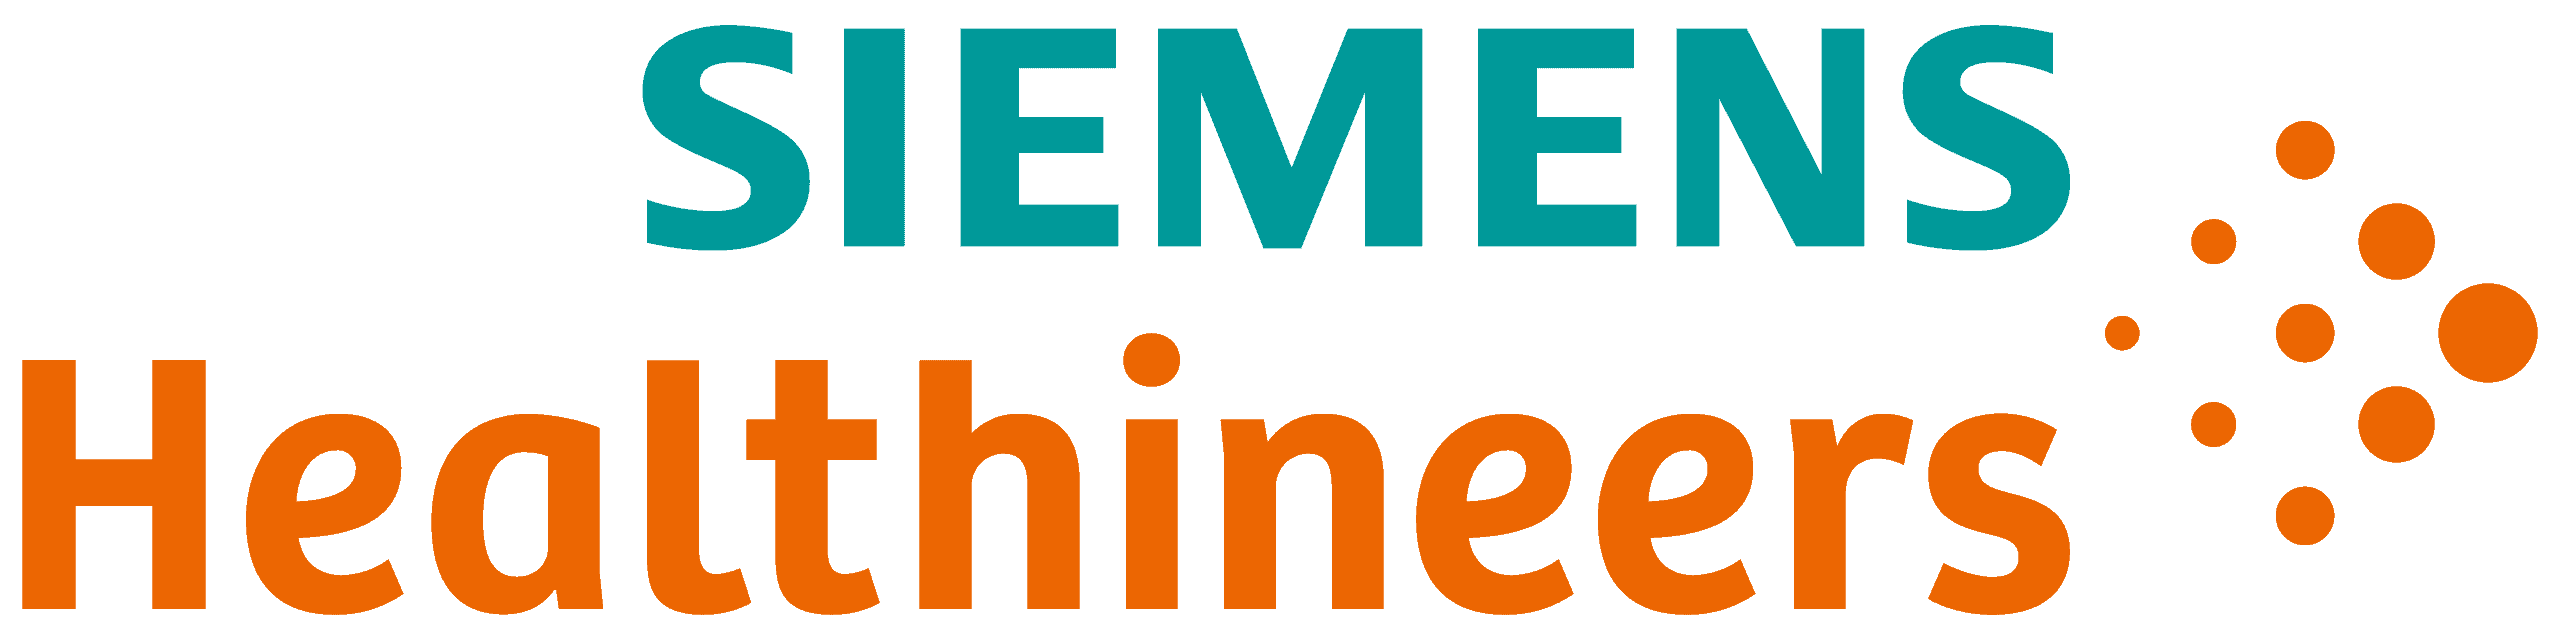 Siemens Healthineers Logo